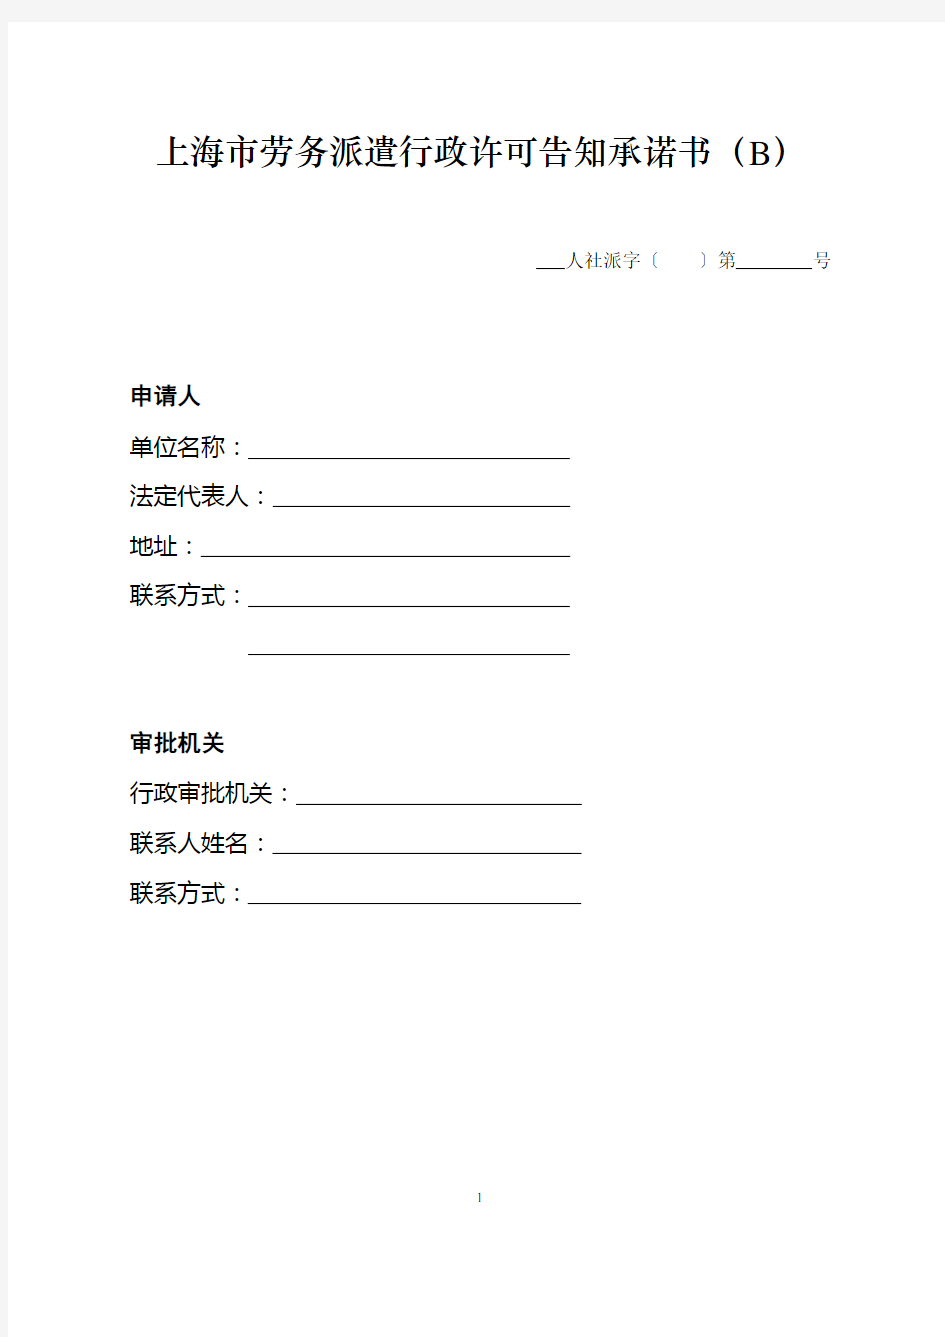 上海市劳务派遣行政许可告知承诺书